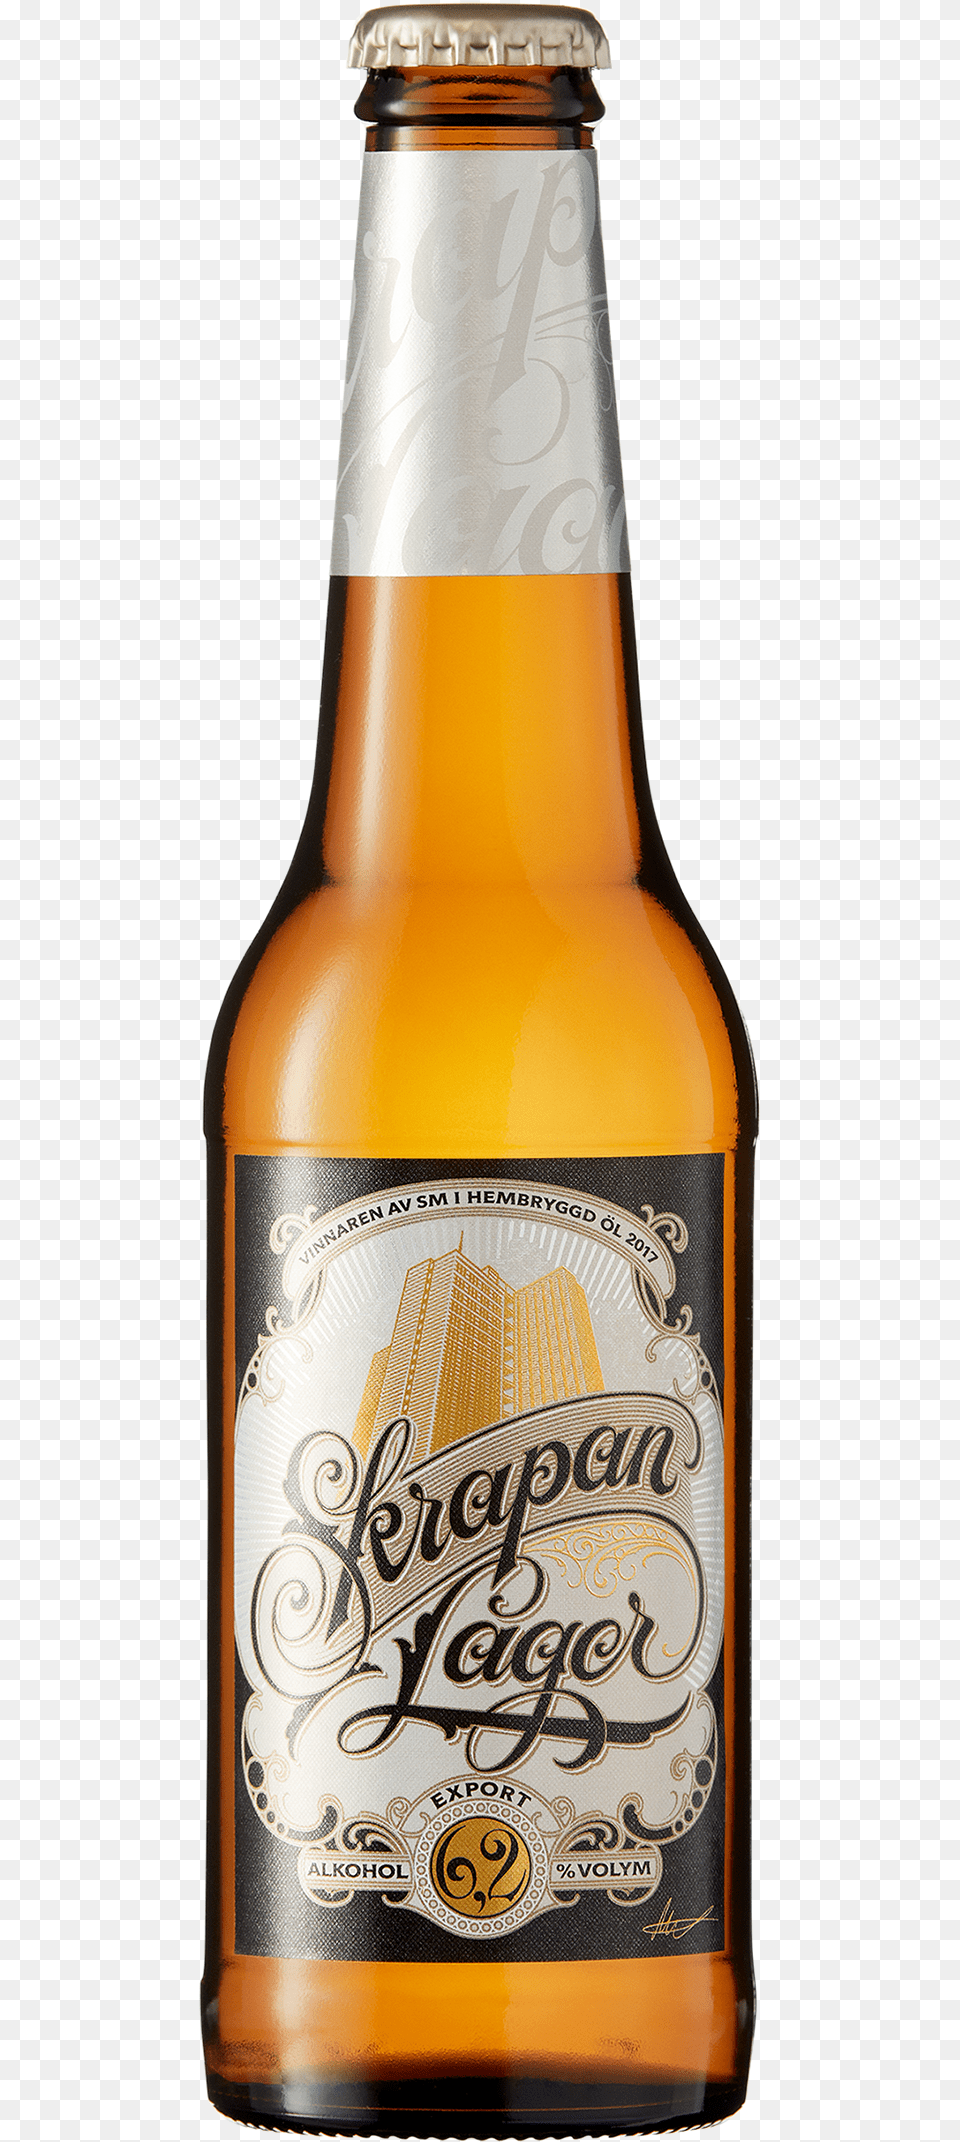 Corona Beer, Alcohol, Beer Bottle, Beverage, Bottle Png Image